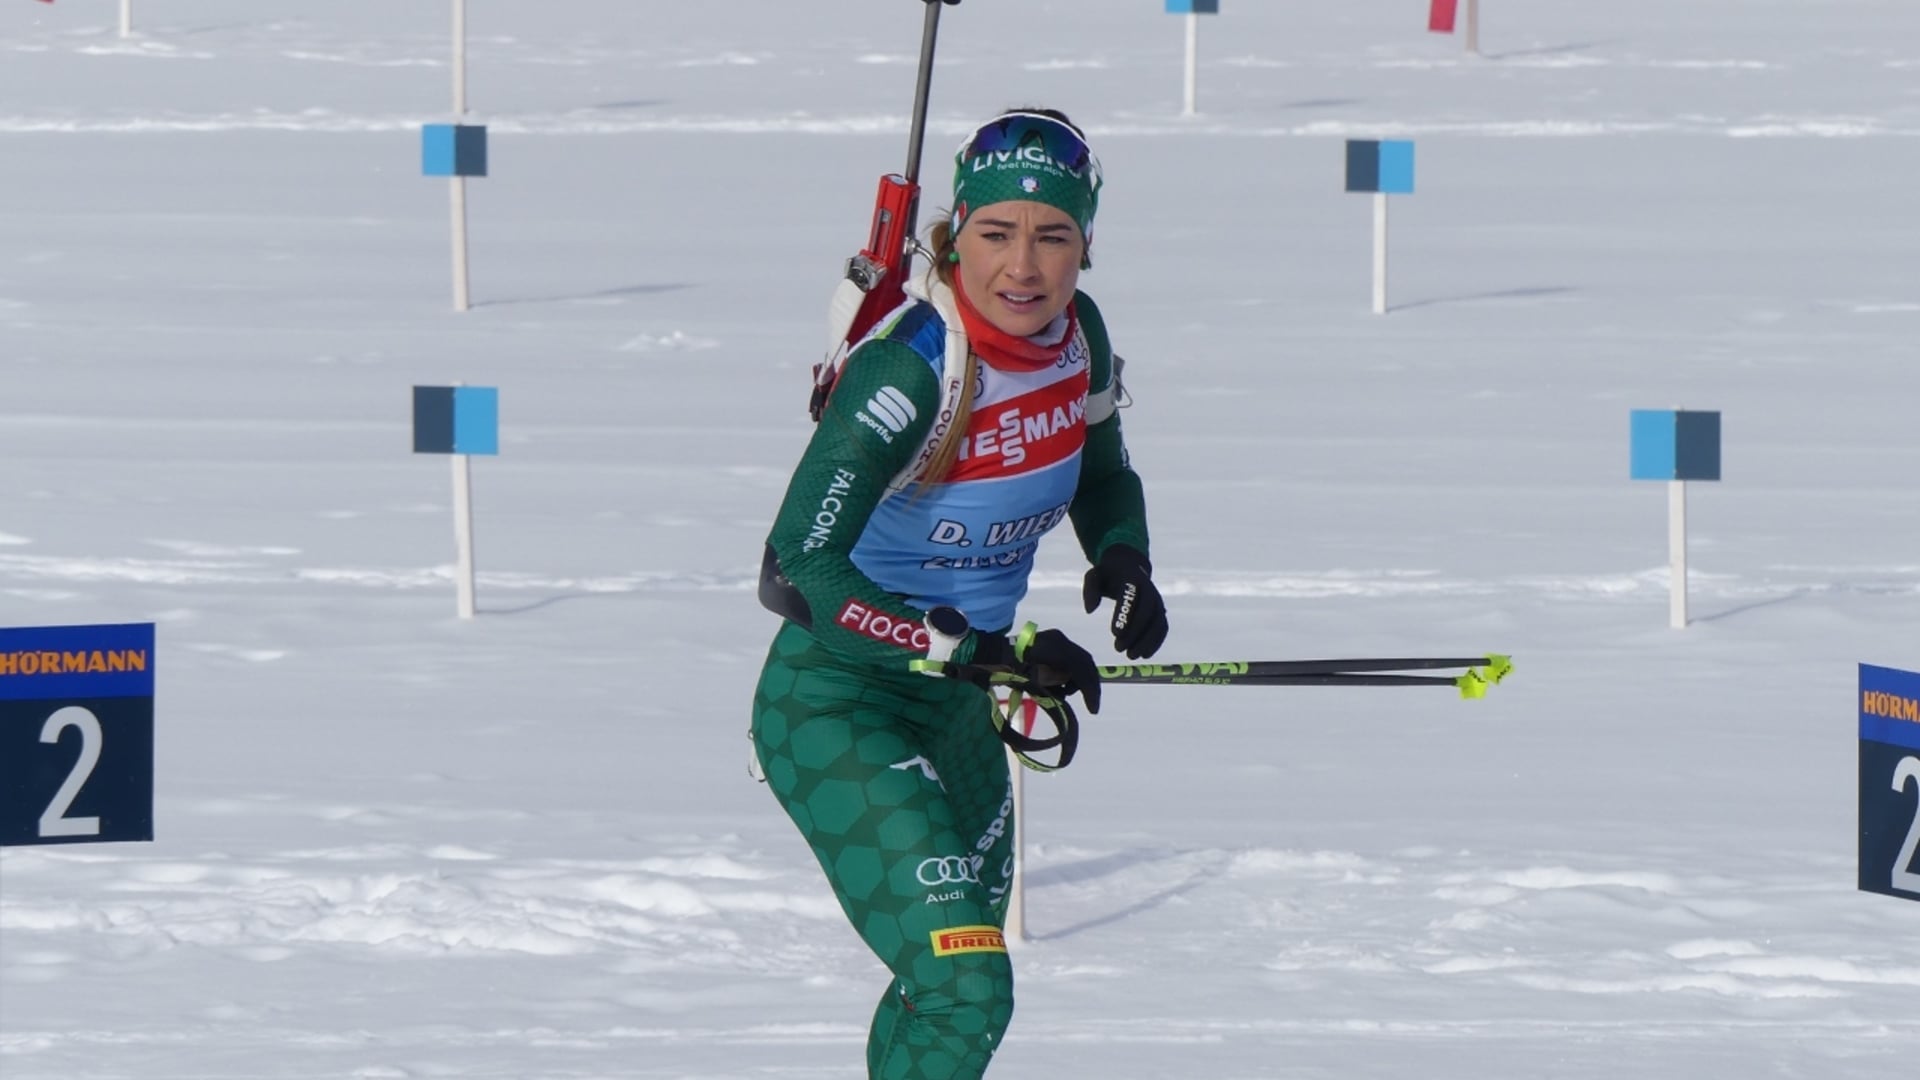 23.01.2019 - Si alza il sipario sulla Coppa del mondo di biathlon ad Anterselva